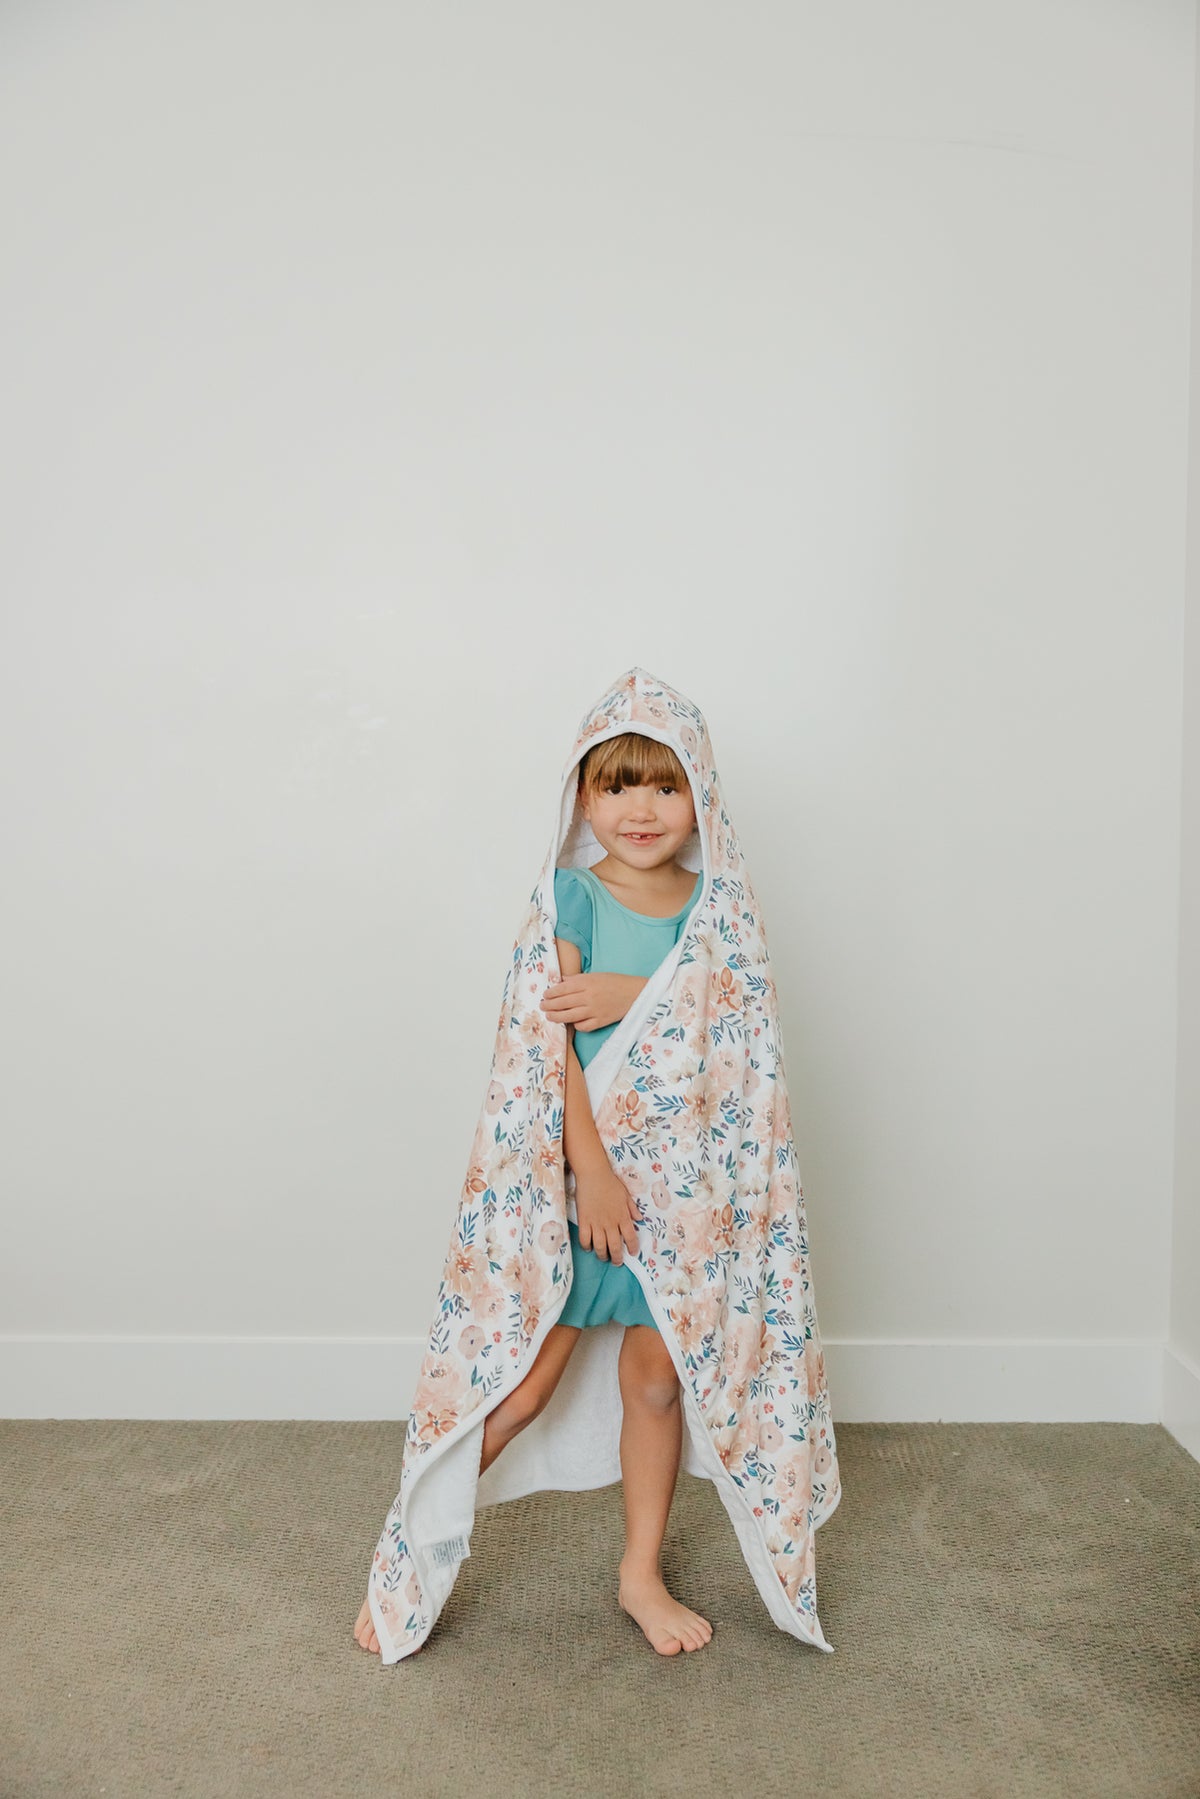 Premium Big Kid Hooded Towel - Autumn